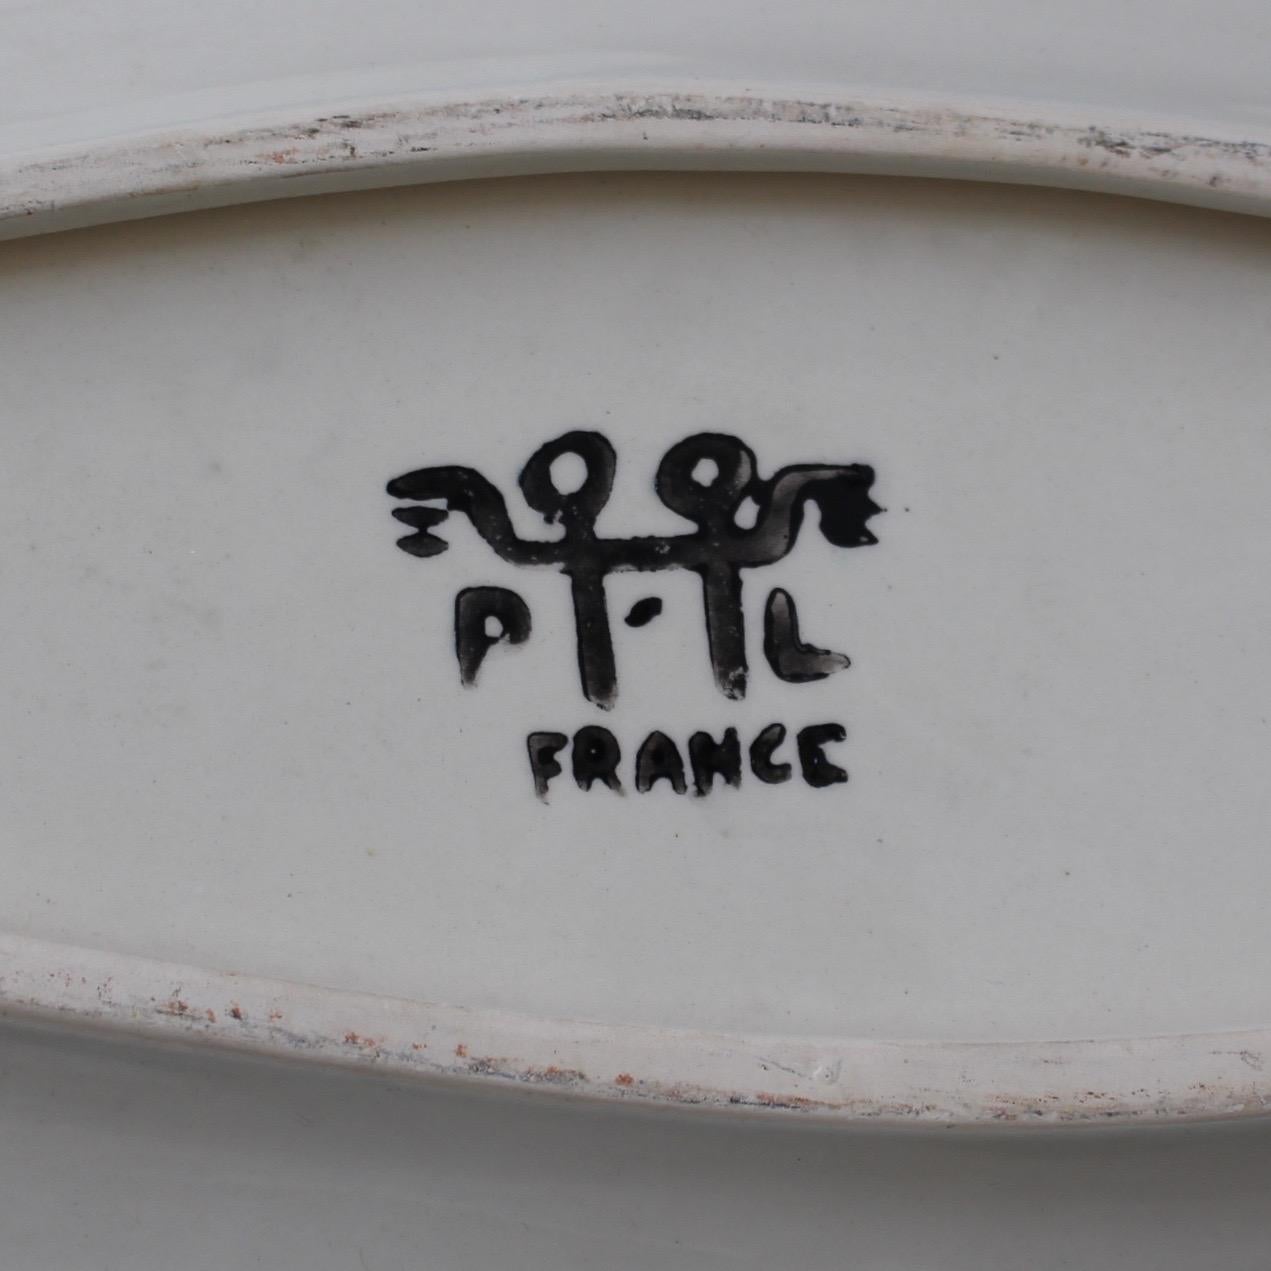 Ceramic Decorative Platter with Fish Motif by Jacques Pouchain, Poët-Laval 1